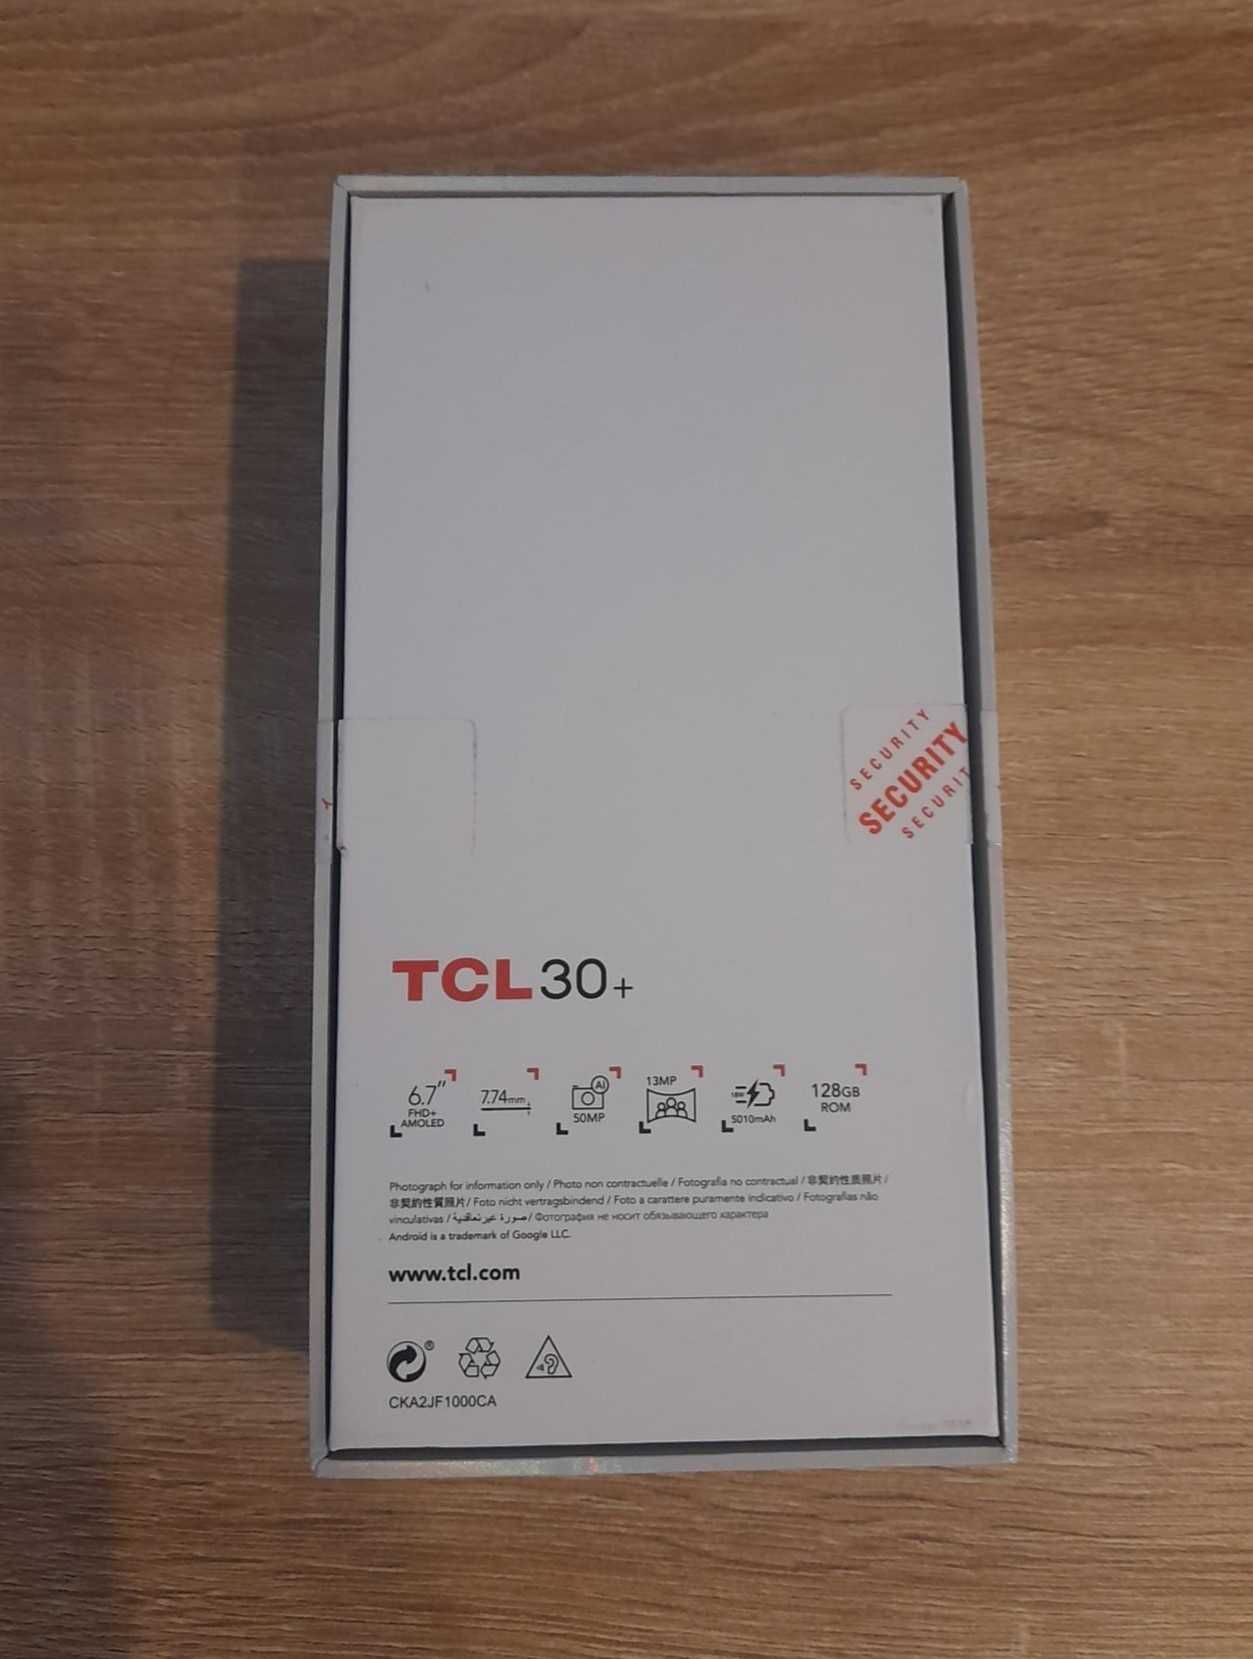 Telemóvel TCL 30+ (como NOVO) 128GB, 50MP